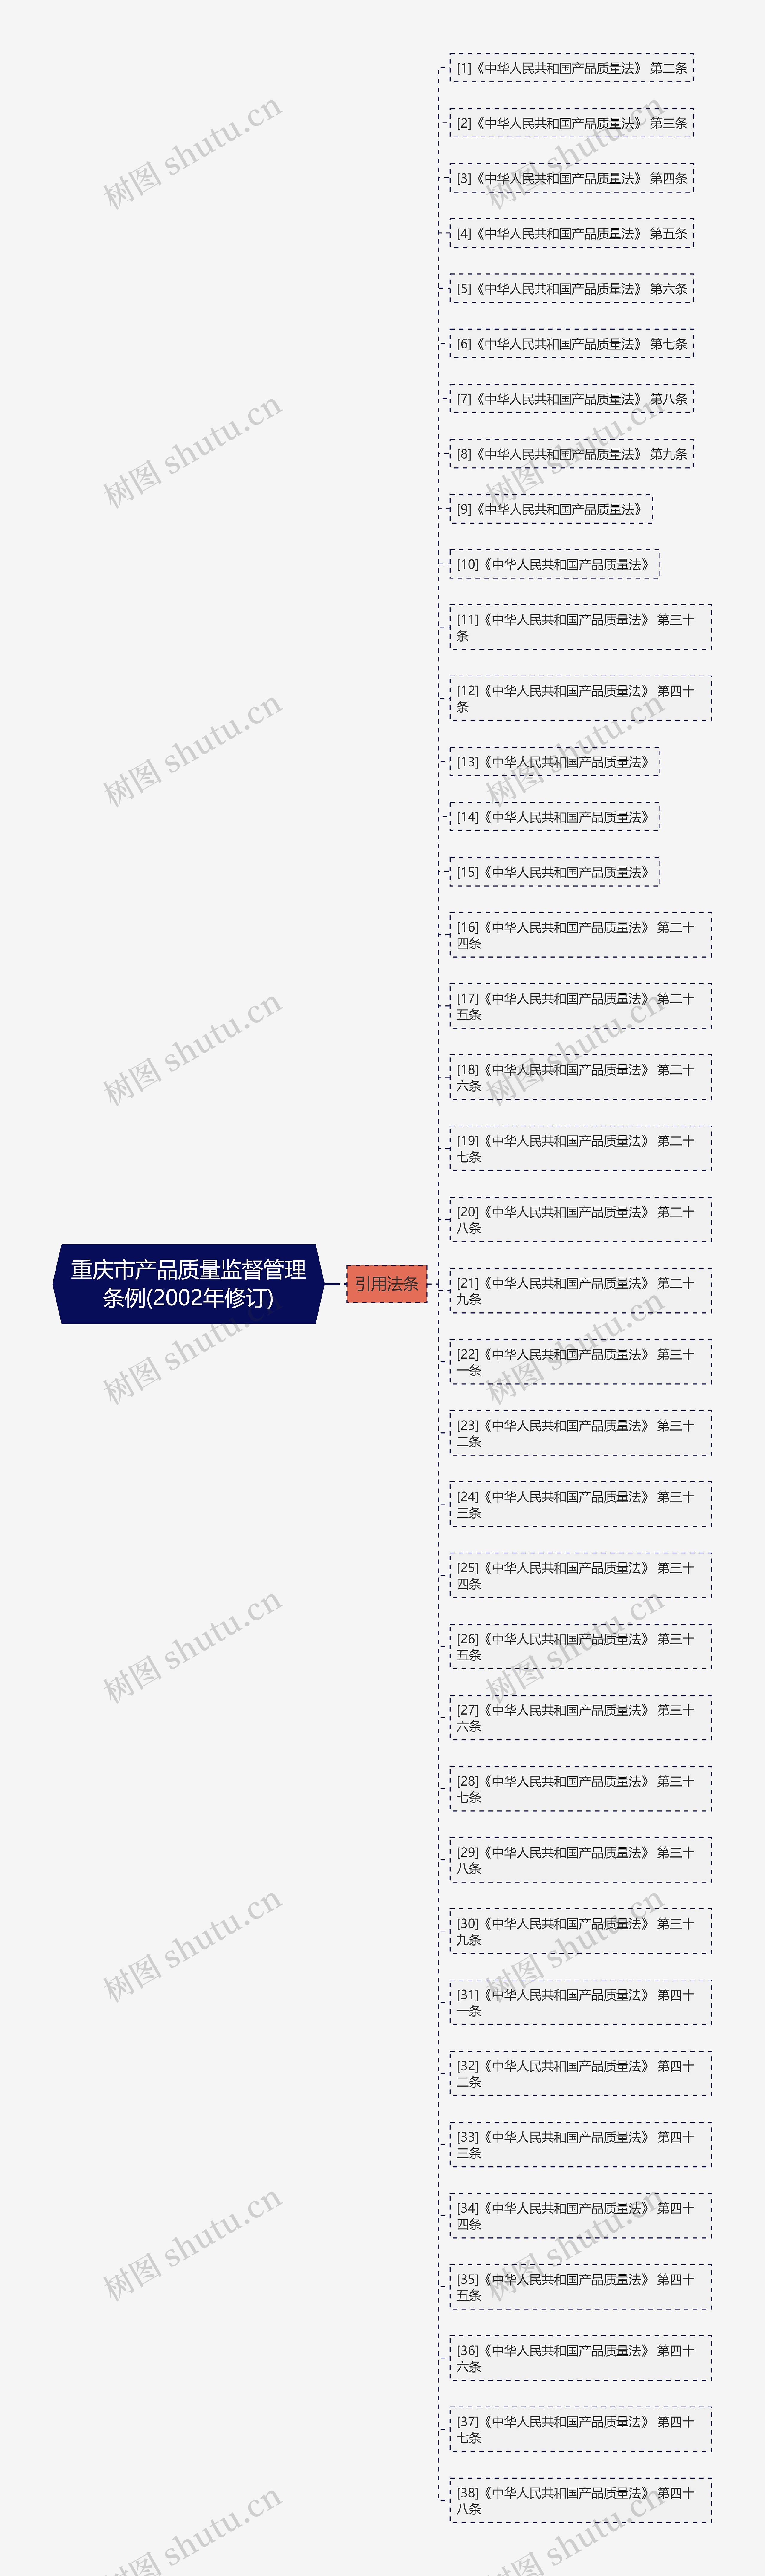 重庆市产品质量监督管理条例(2002年修订)